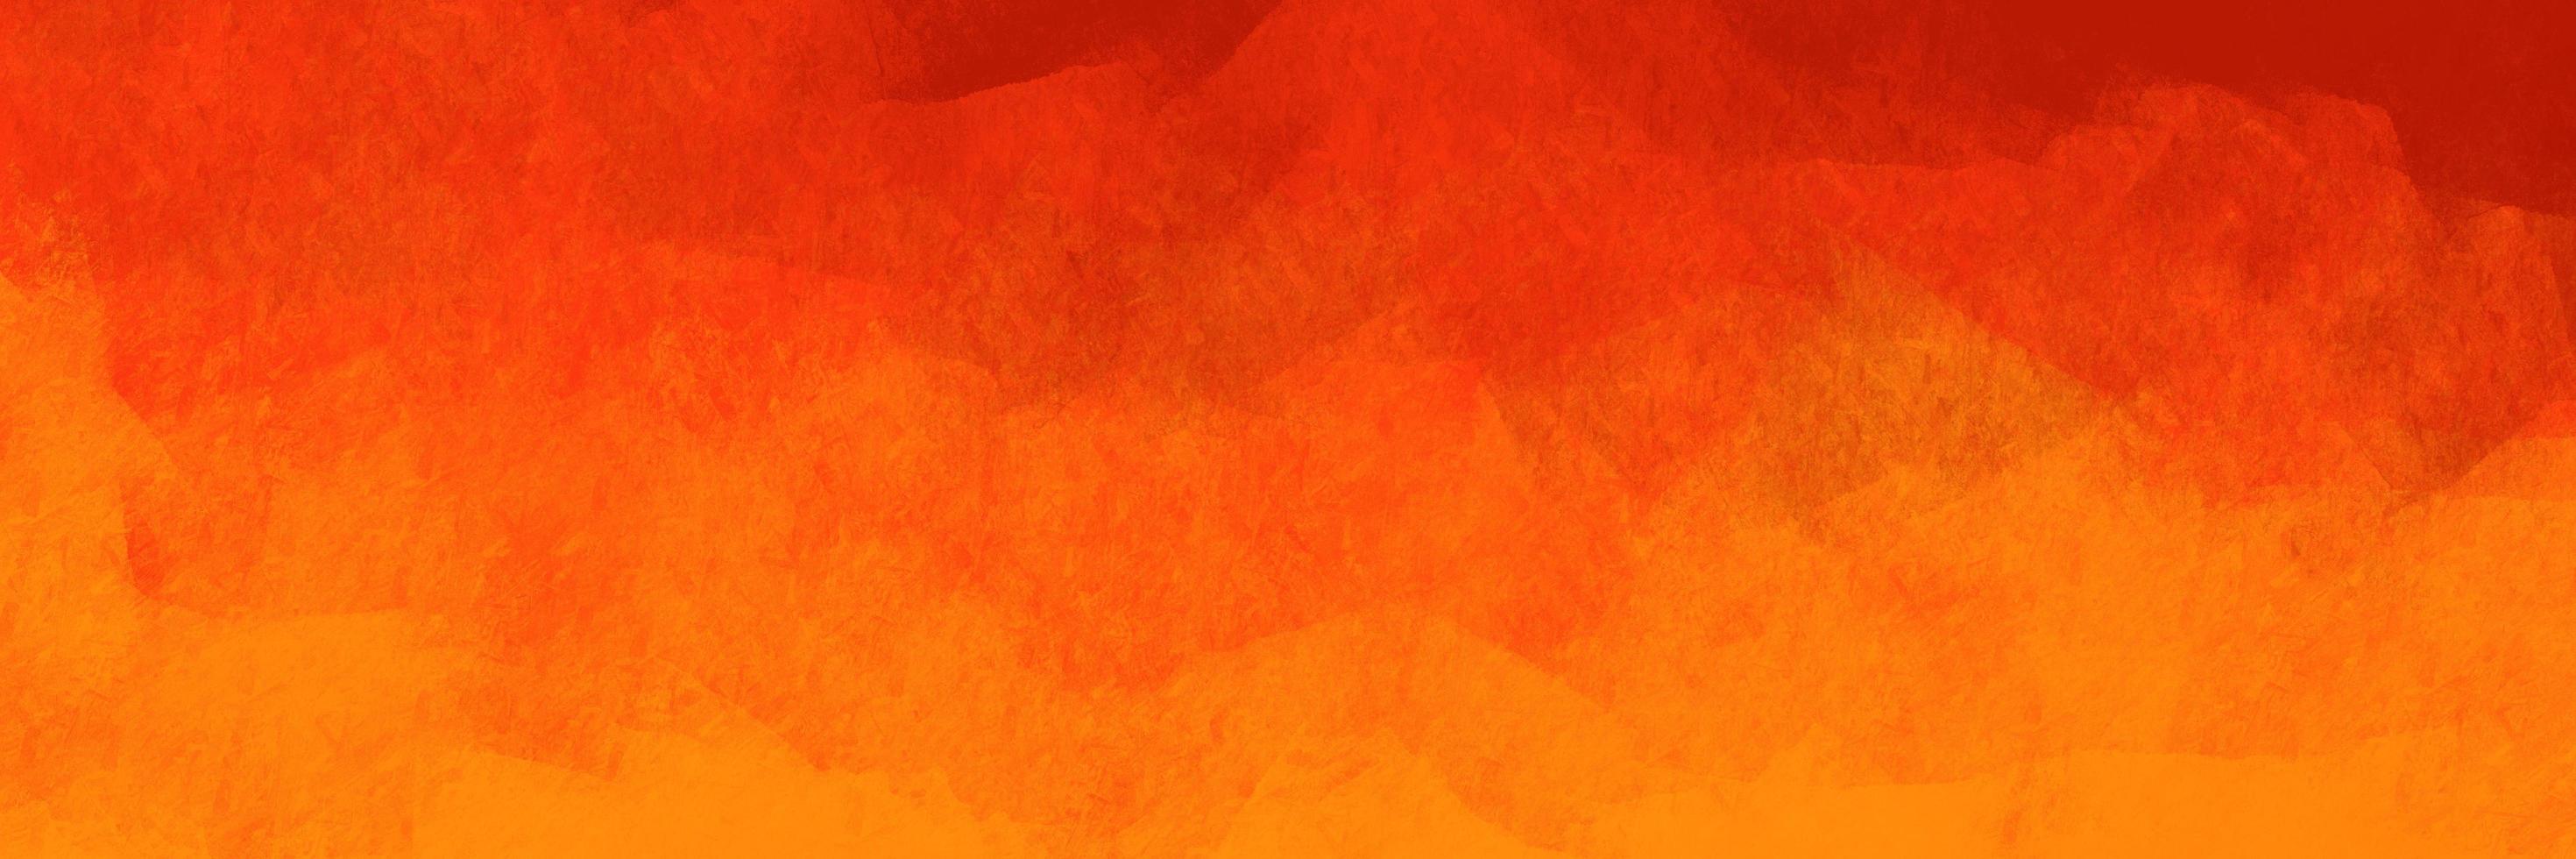 padrão de fundo abstrato escovado na cor laranja com tema de chama. elementos de textura pintada de laranja para design criativo. foto